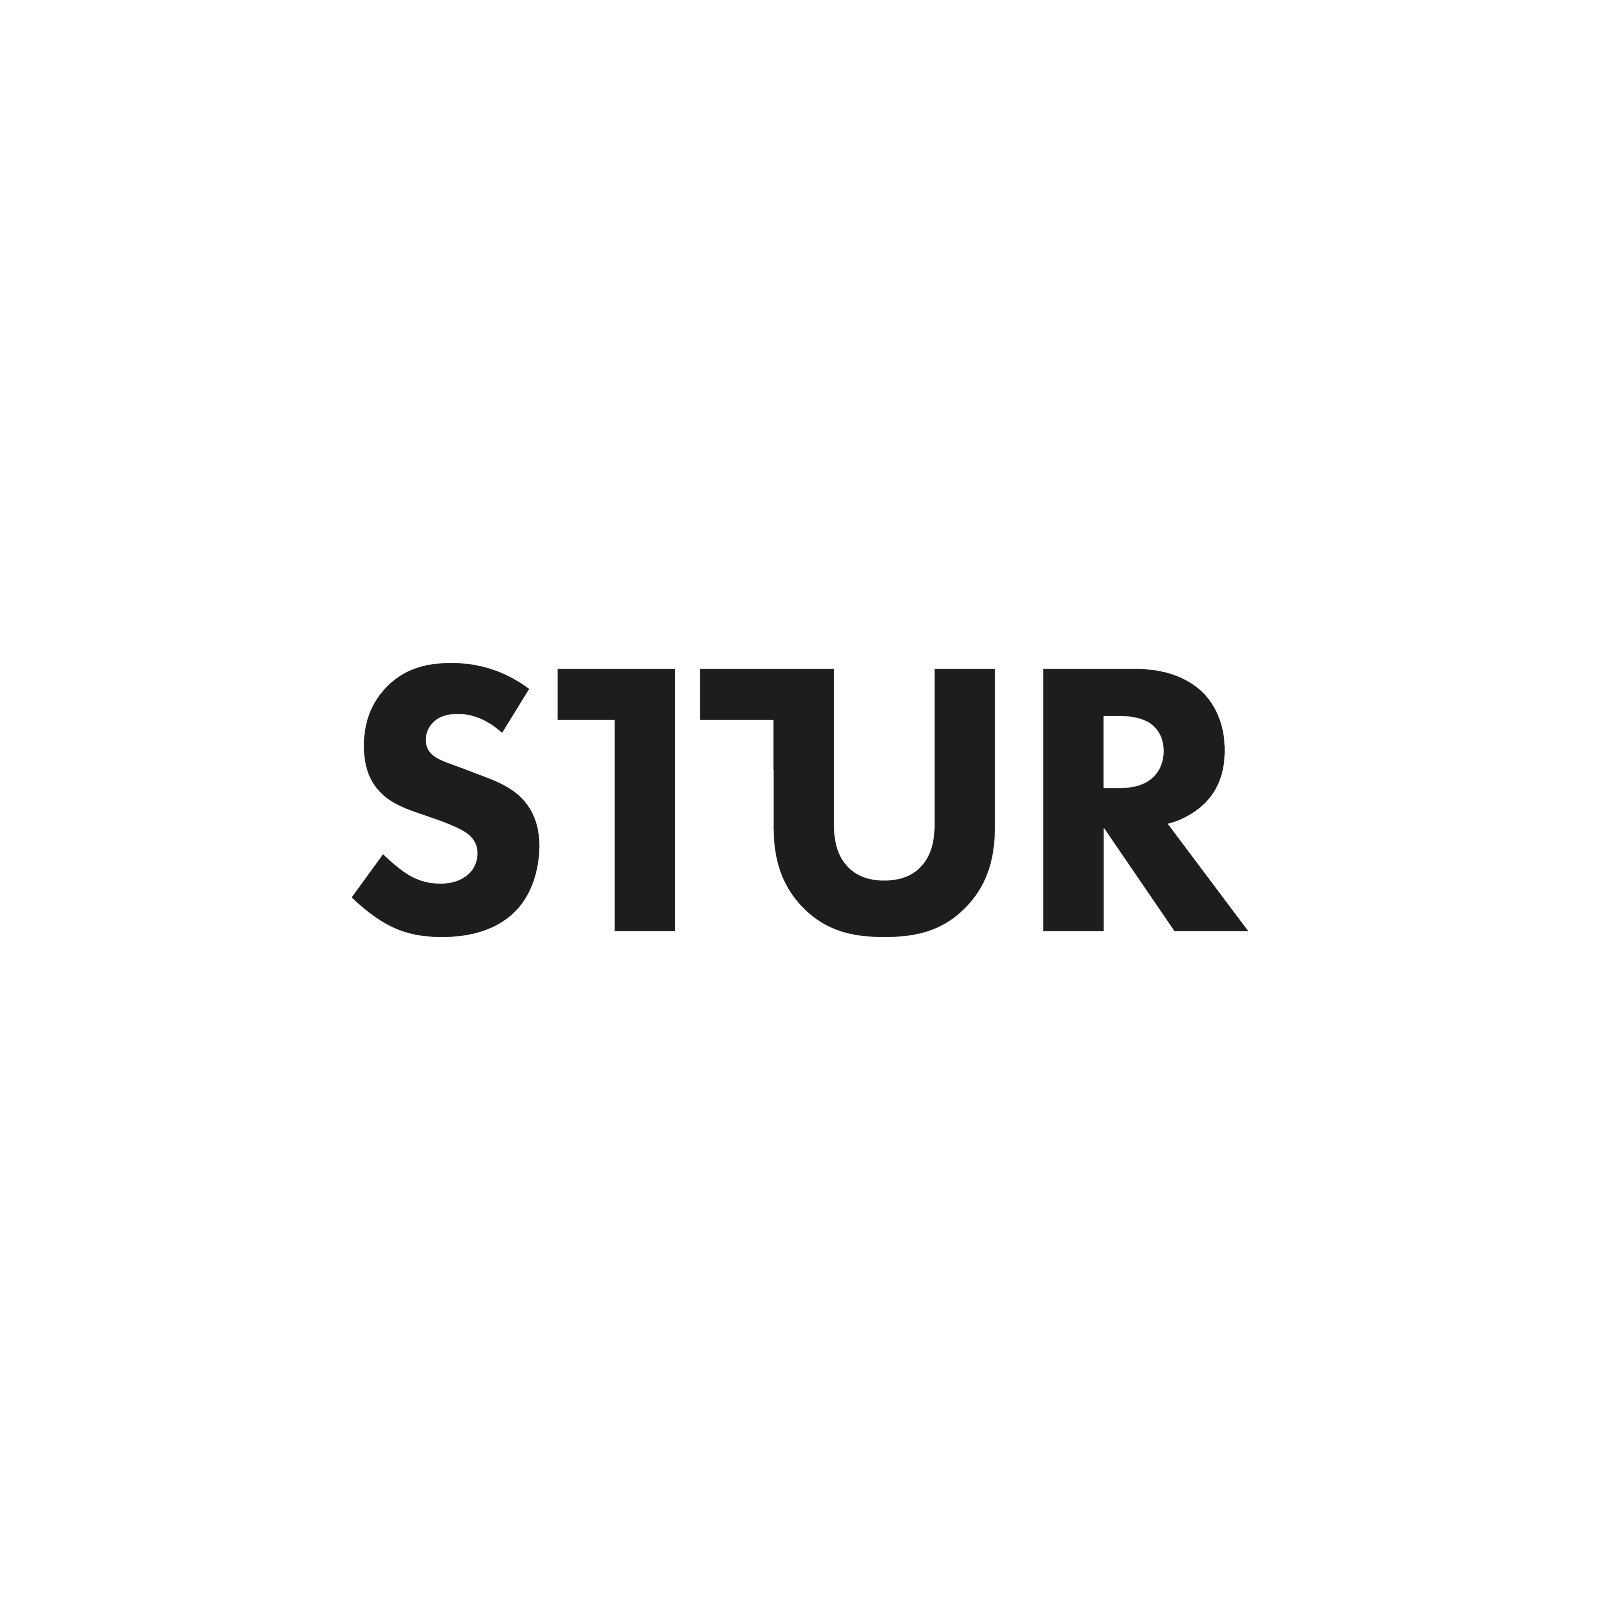 STUR GmbH